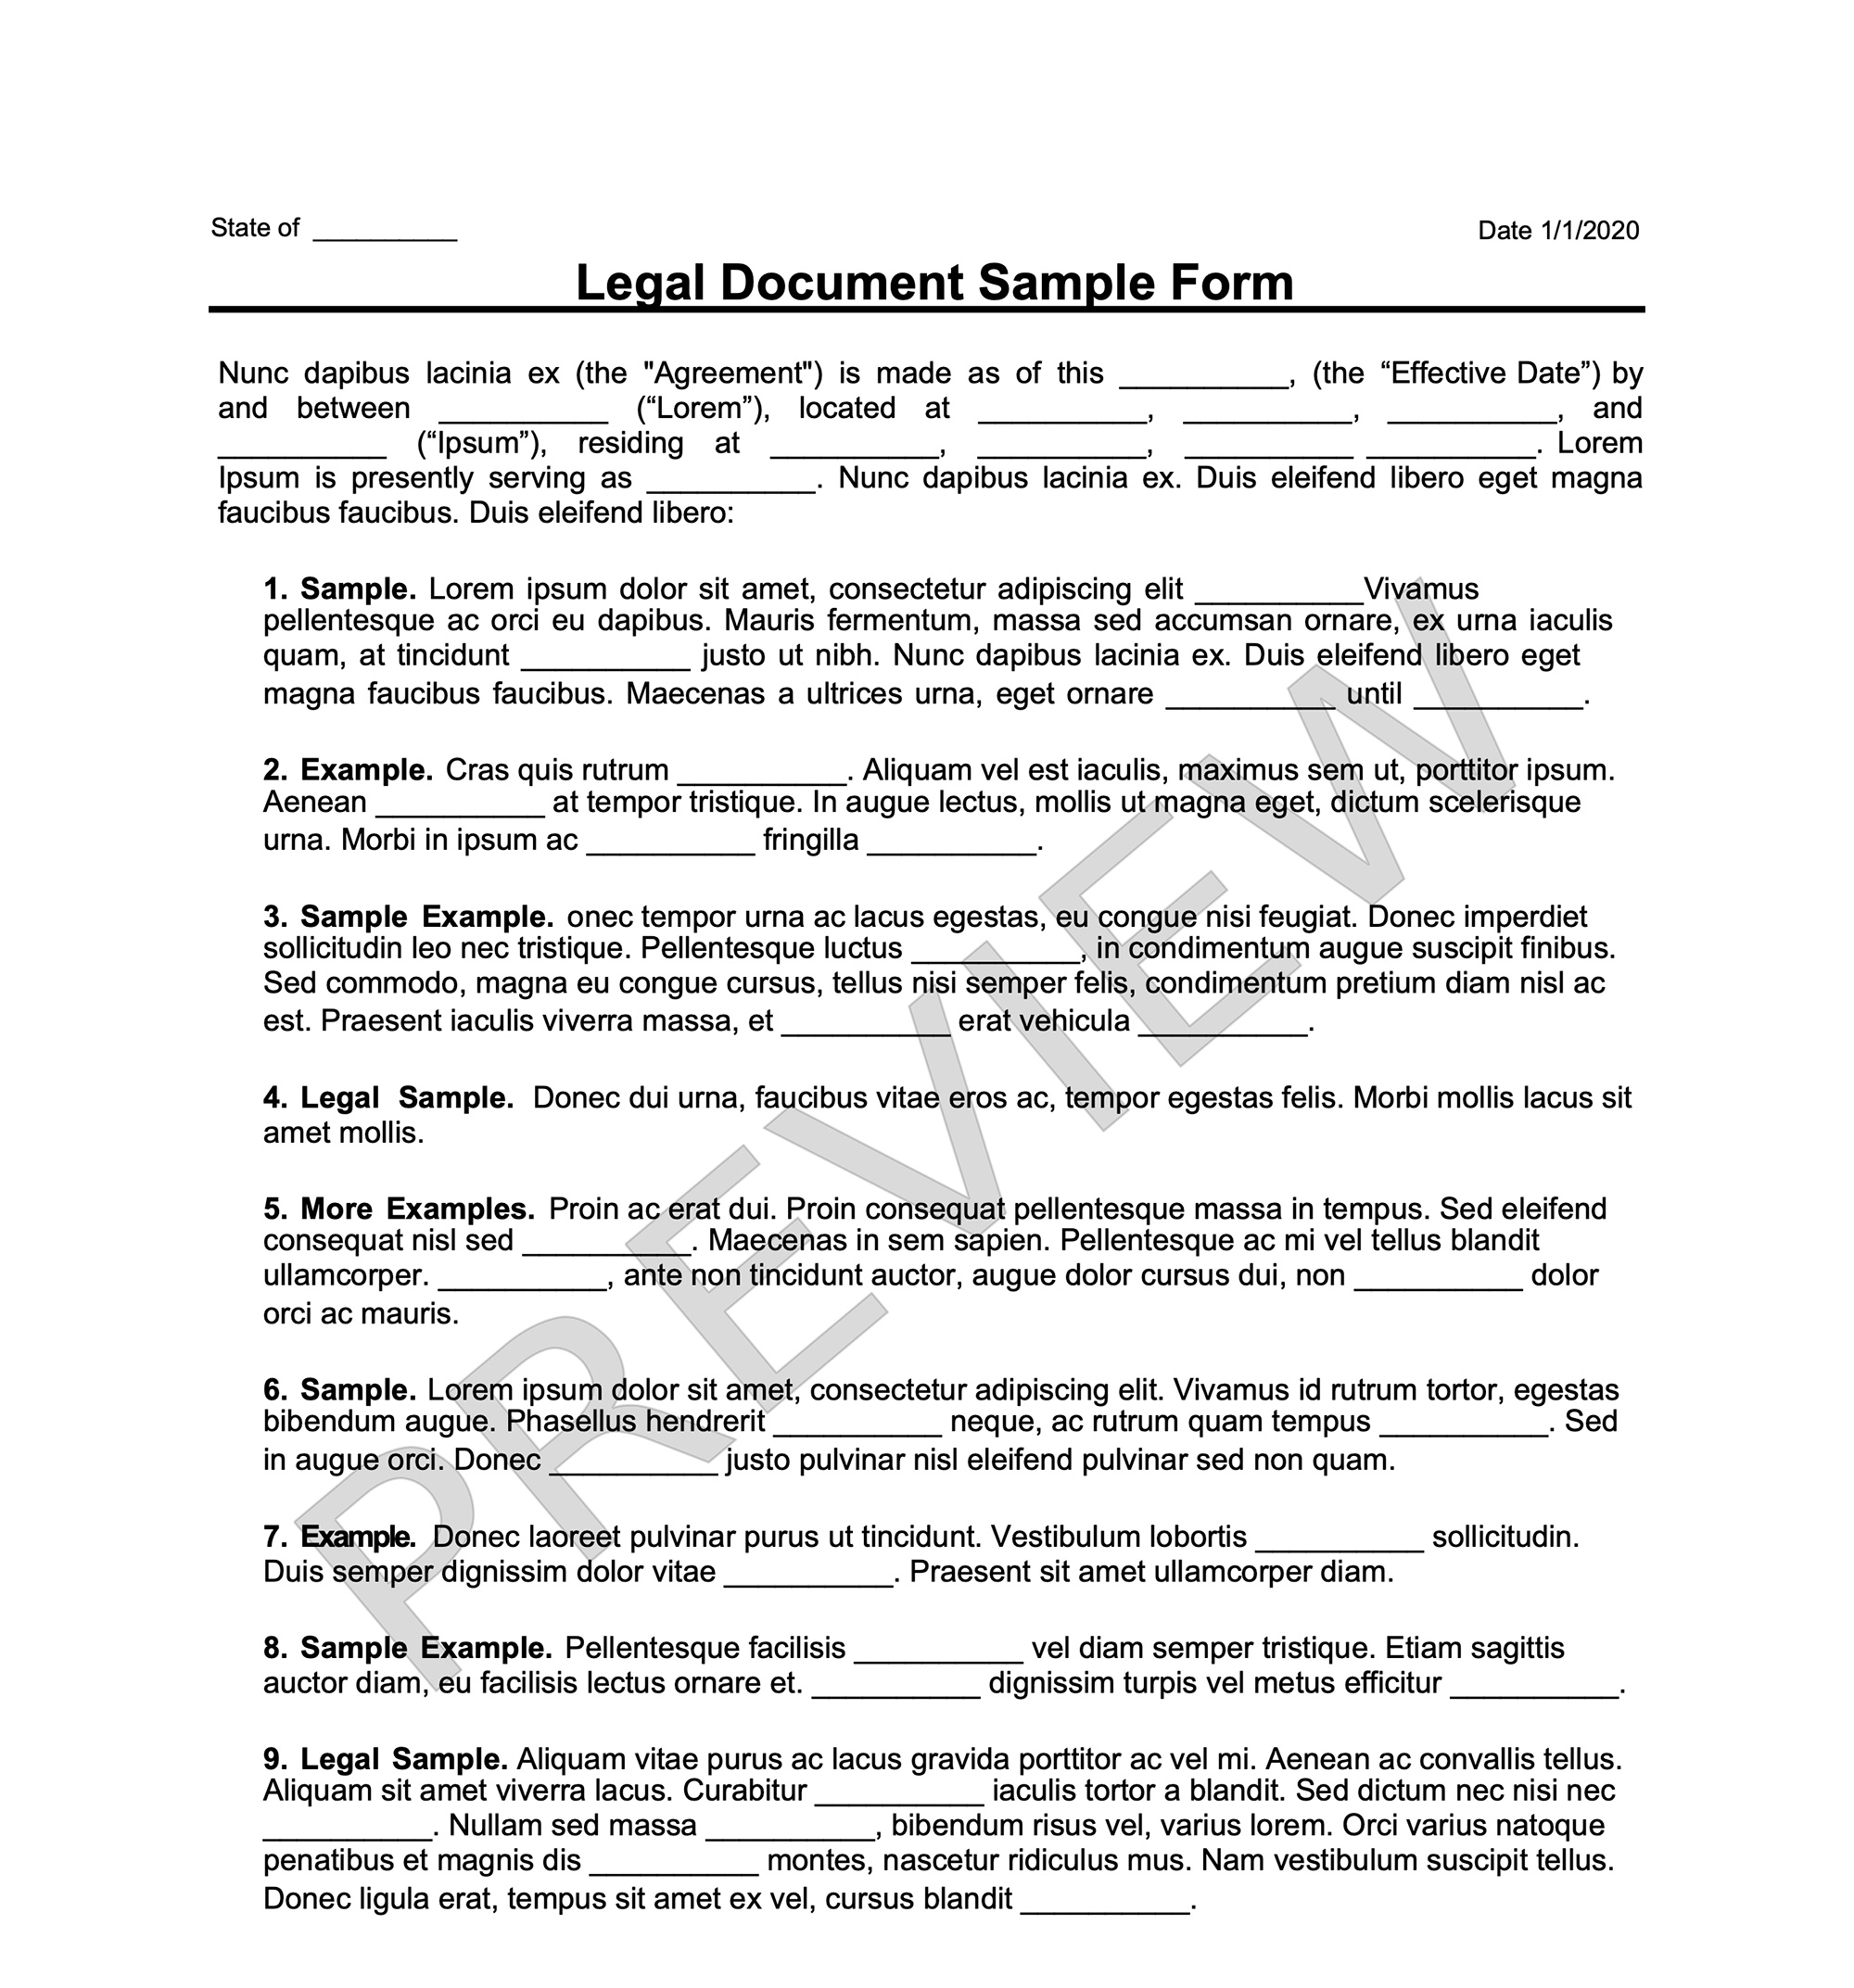 friend loan agreement template